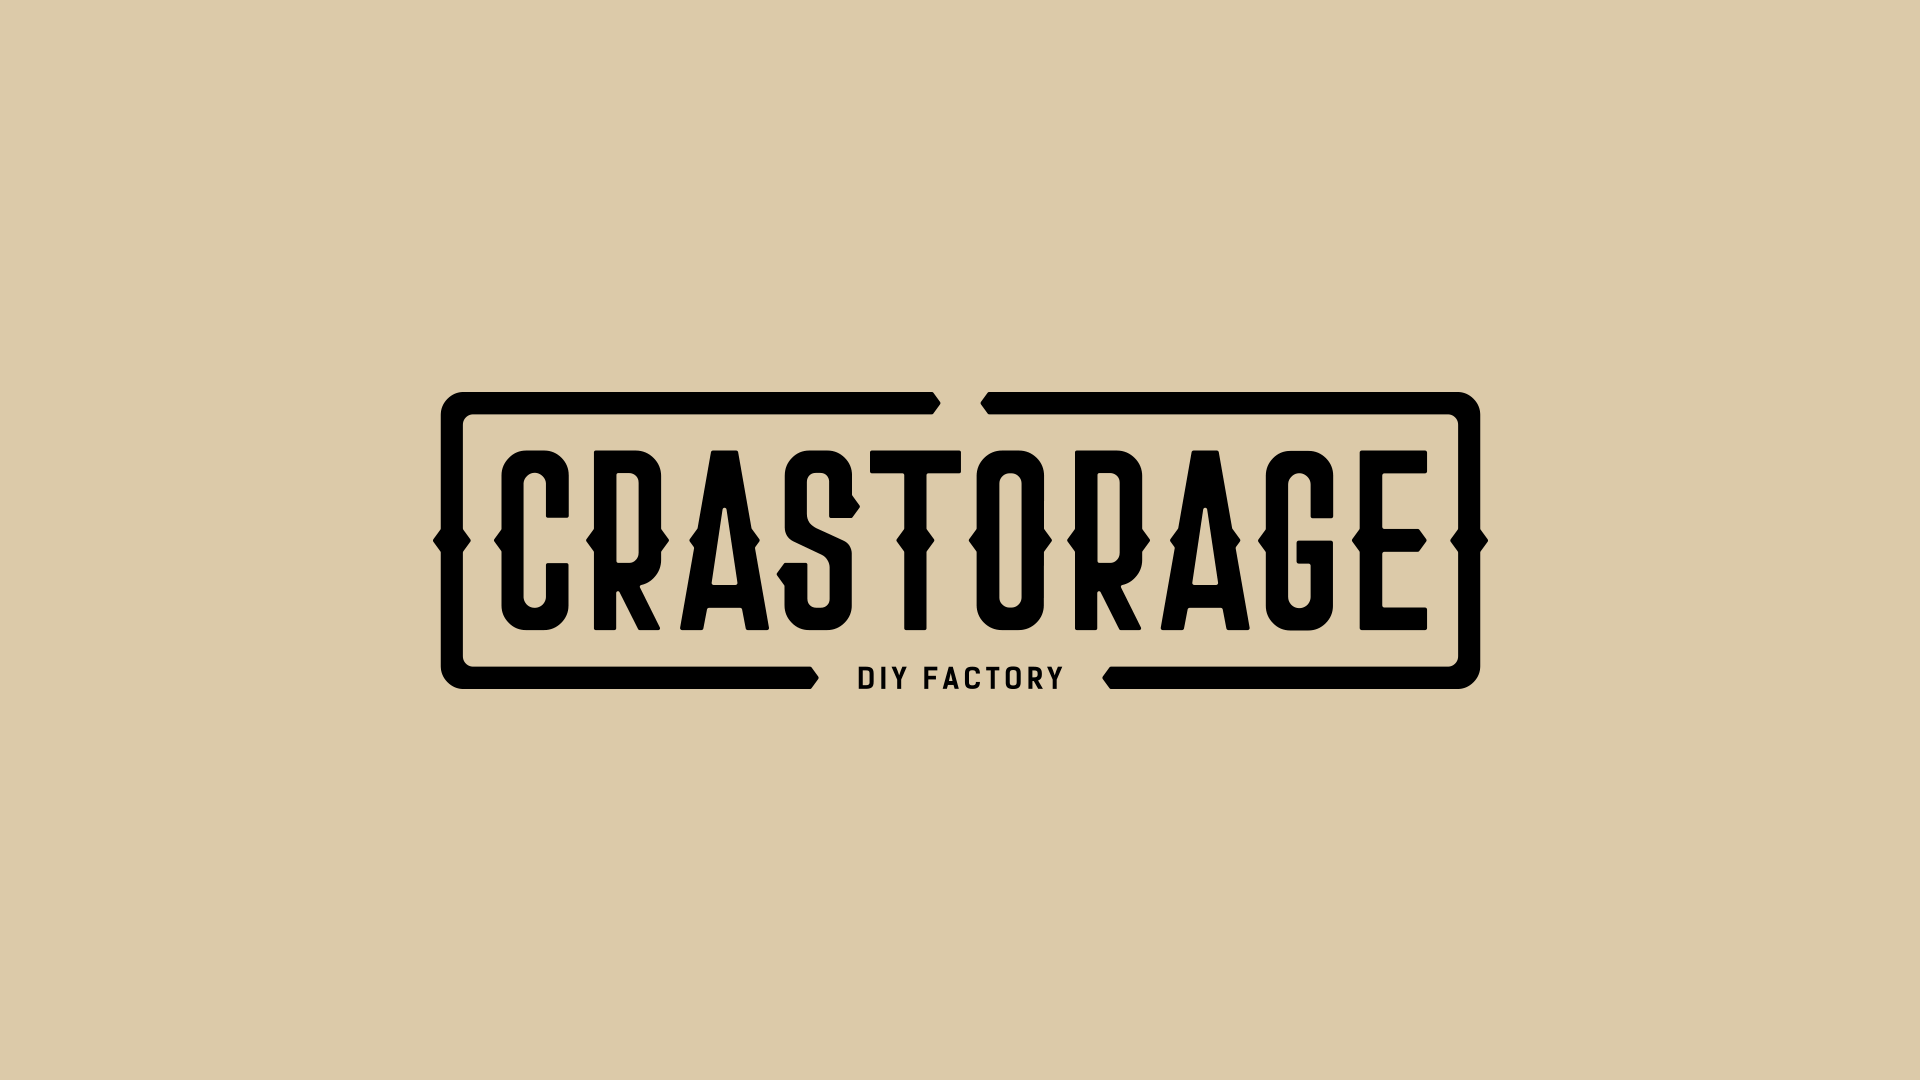 オリジナルツールボックス「CRASTORAGE（クラストレージ）」のロゴデザイン